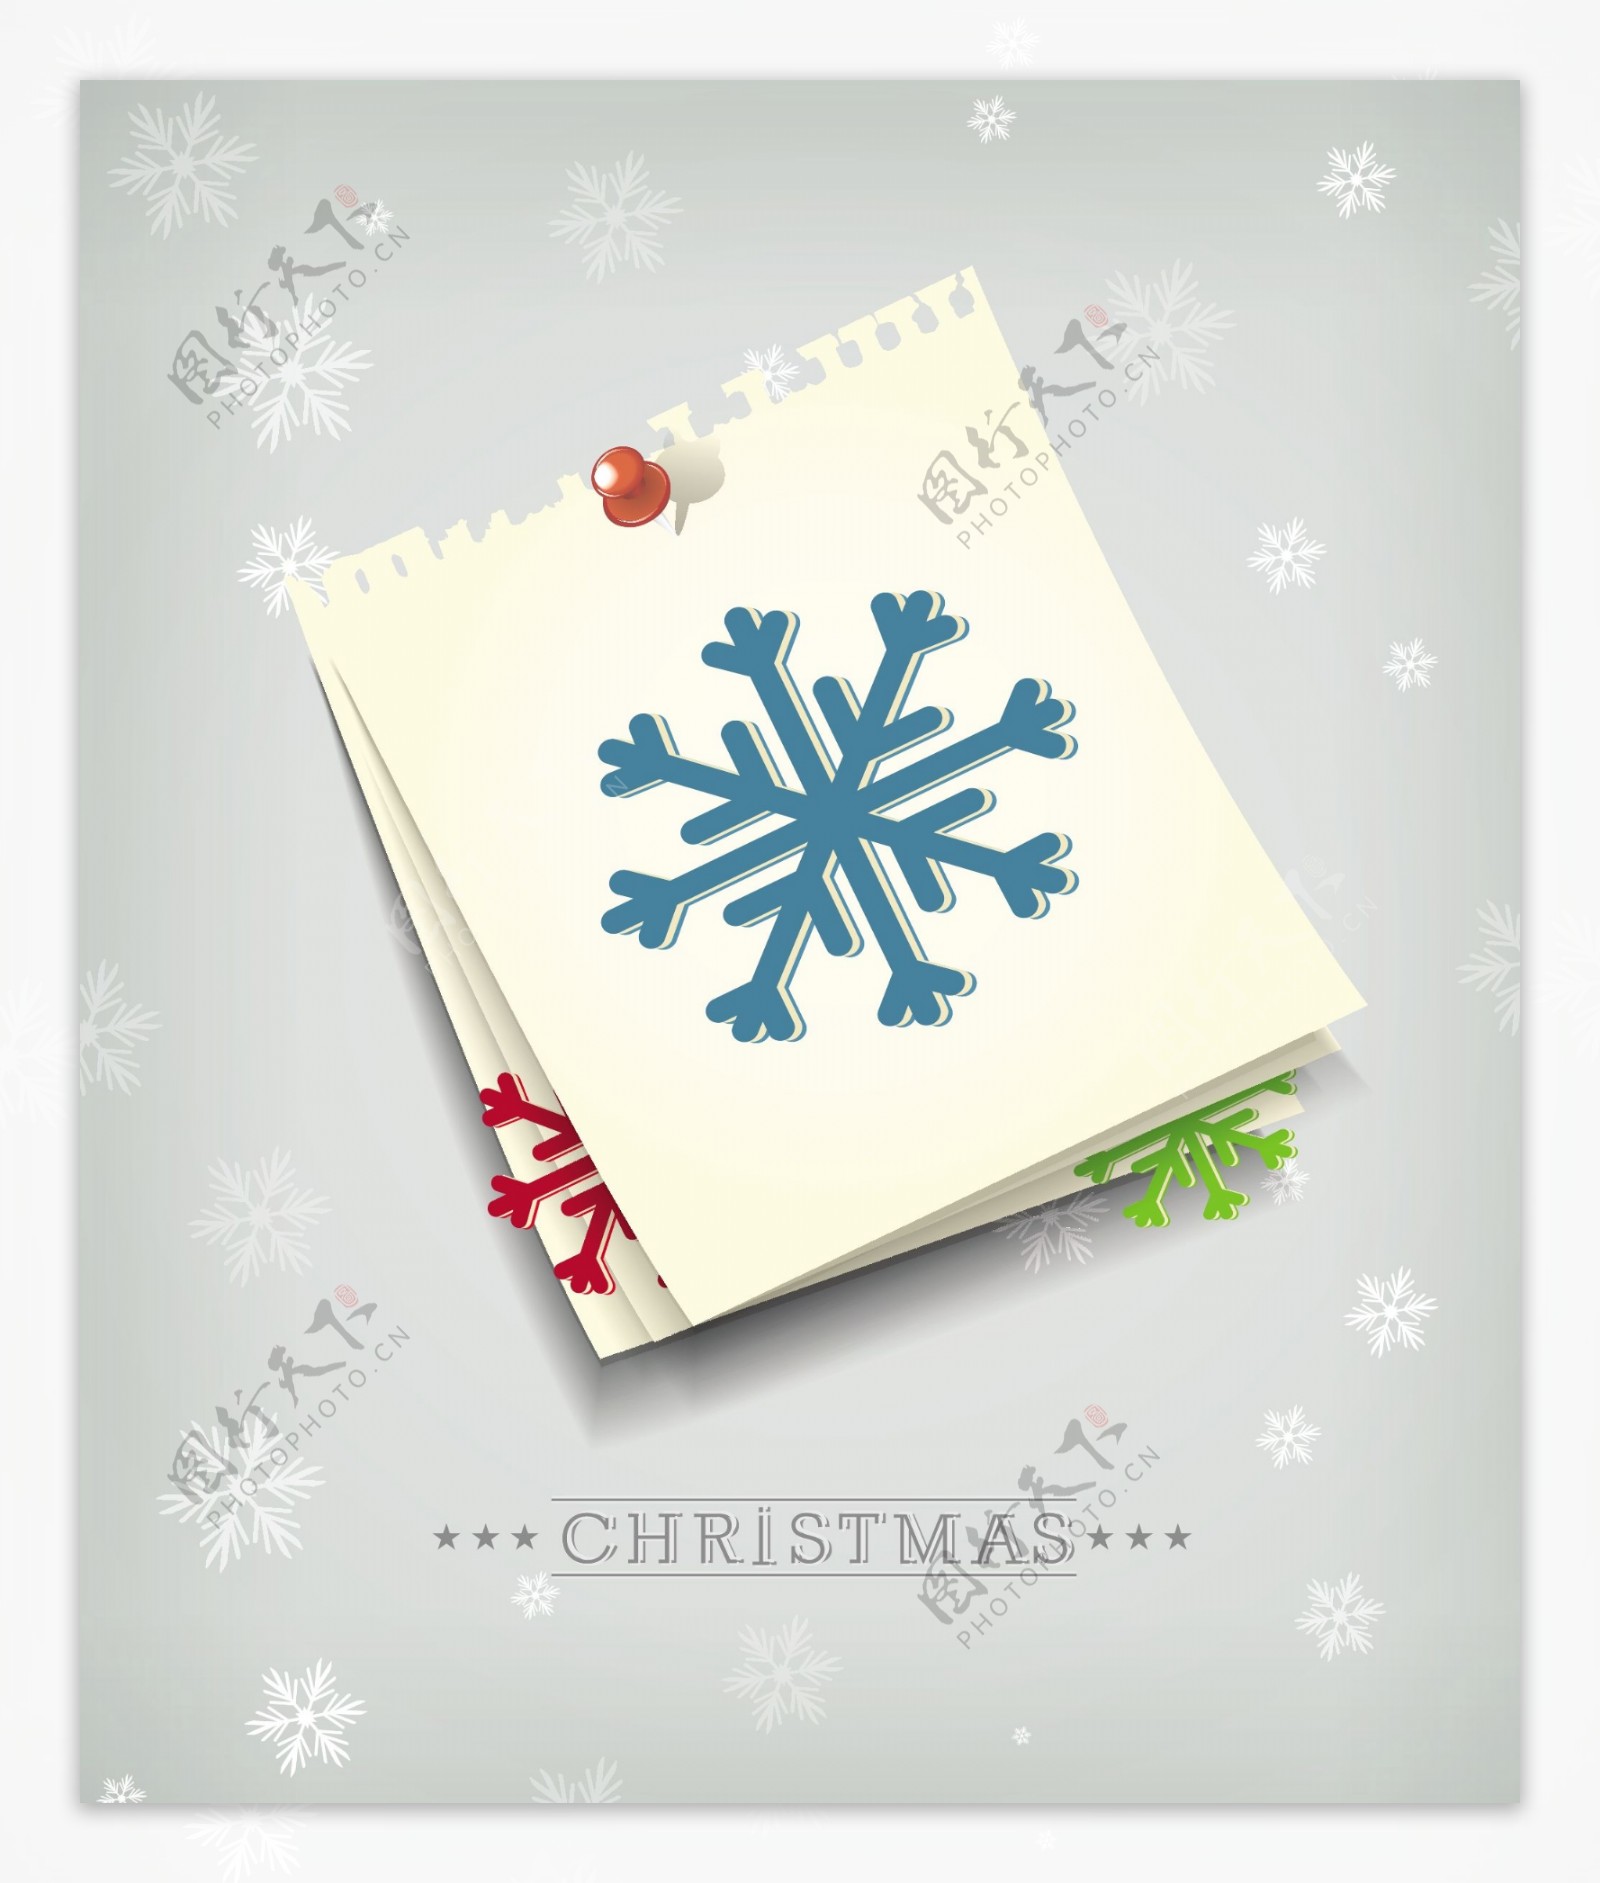 圣诞节插画矢量与纸张和雪花